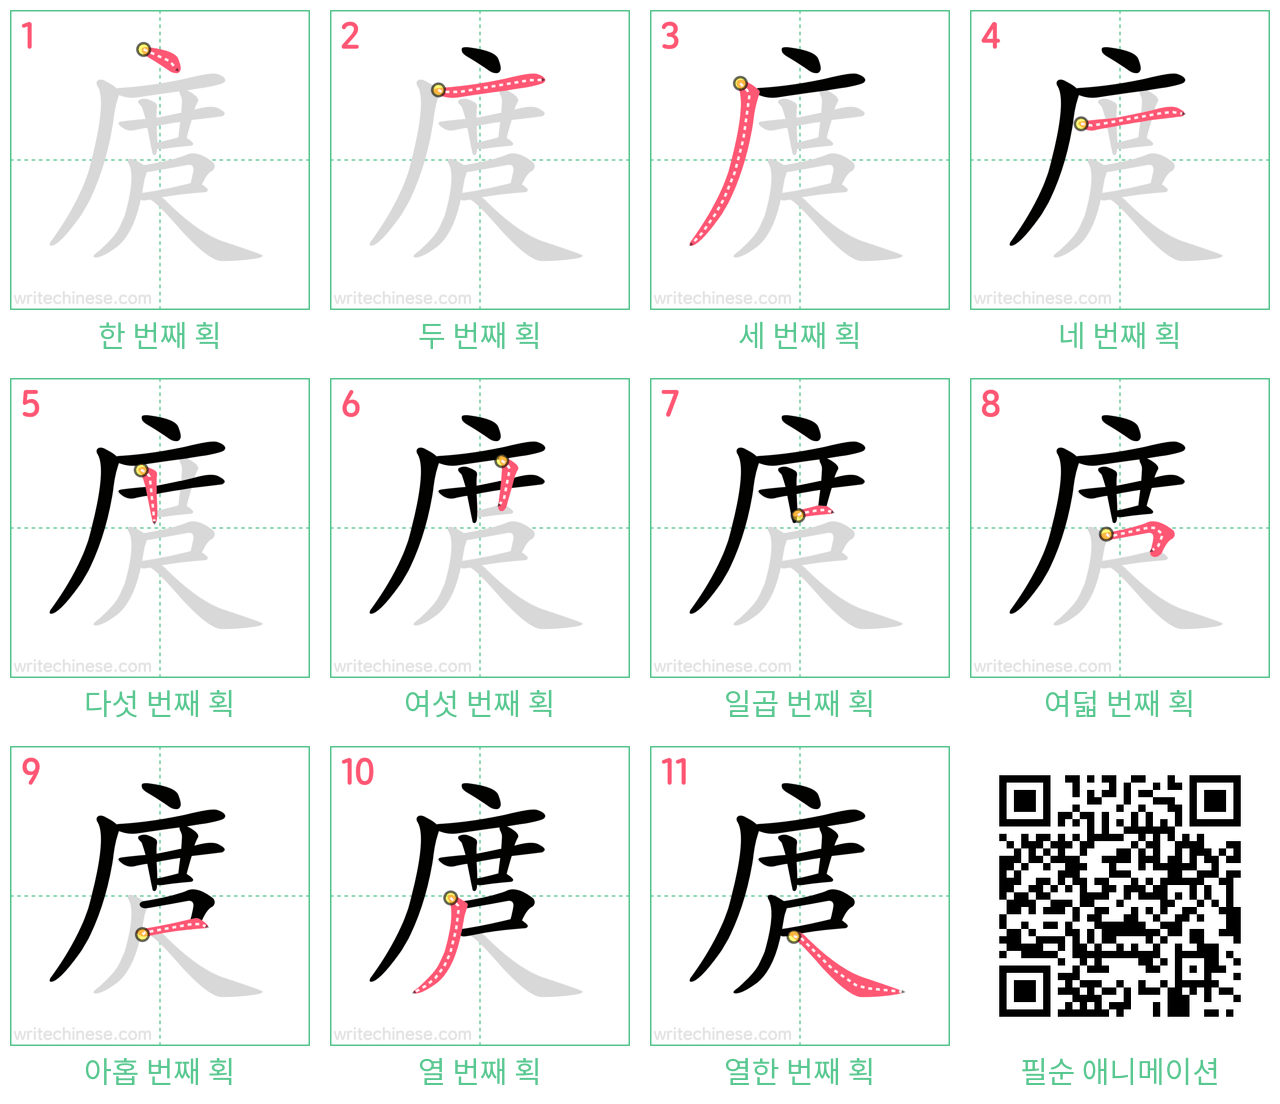 庹 step-by-step stroke order diagrams